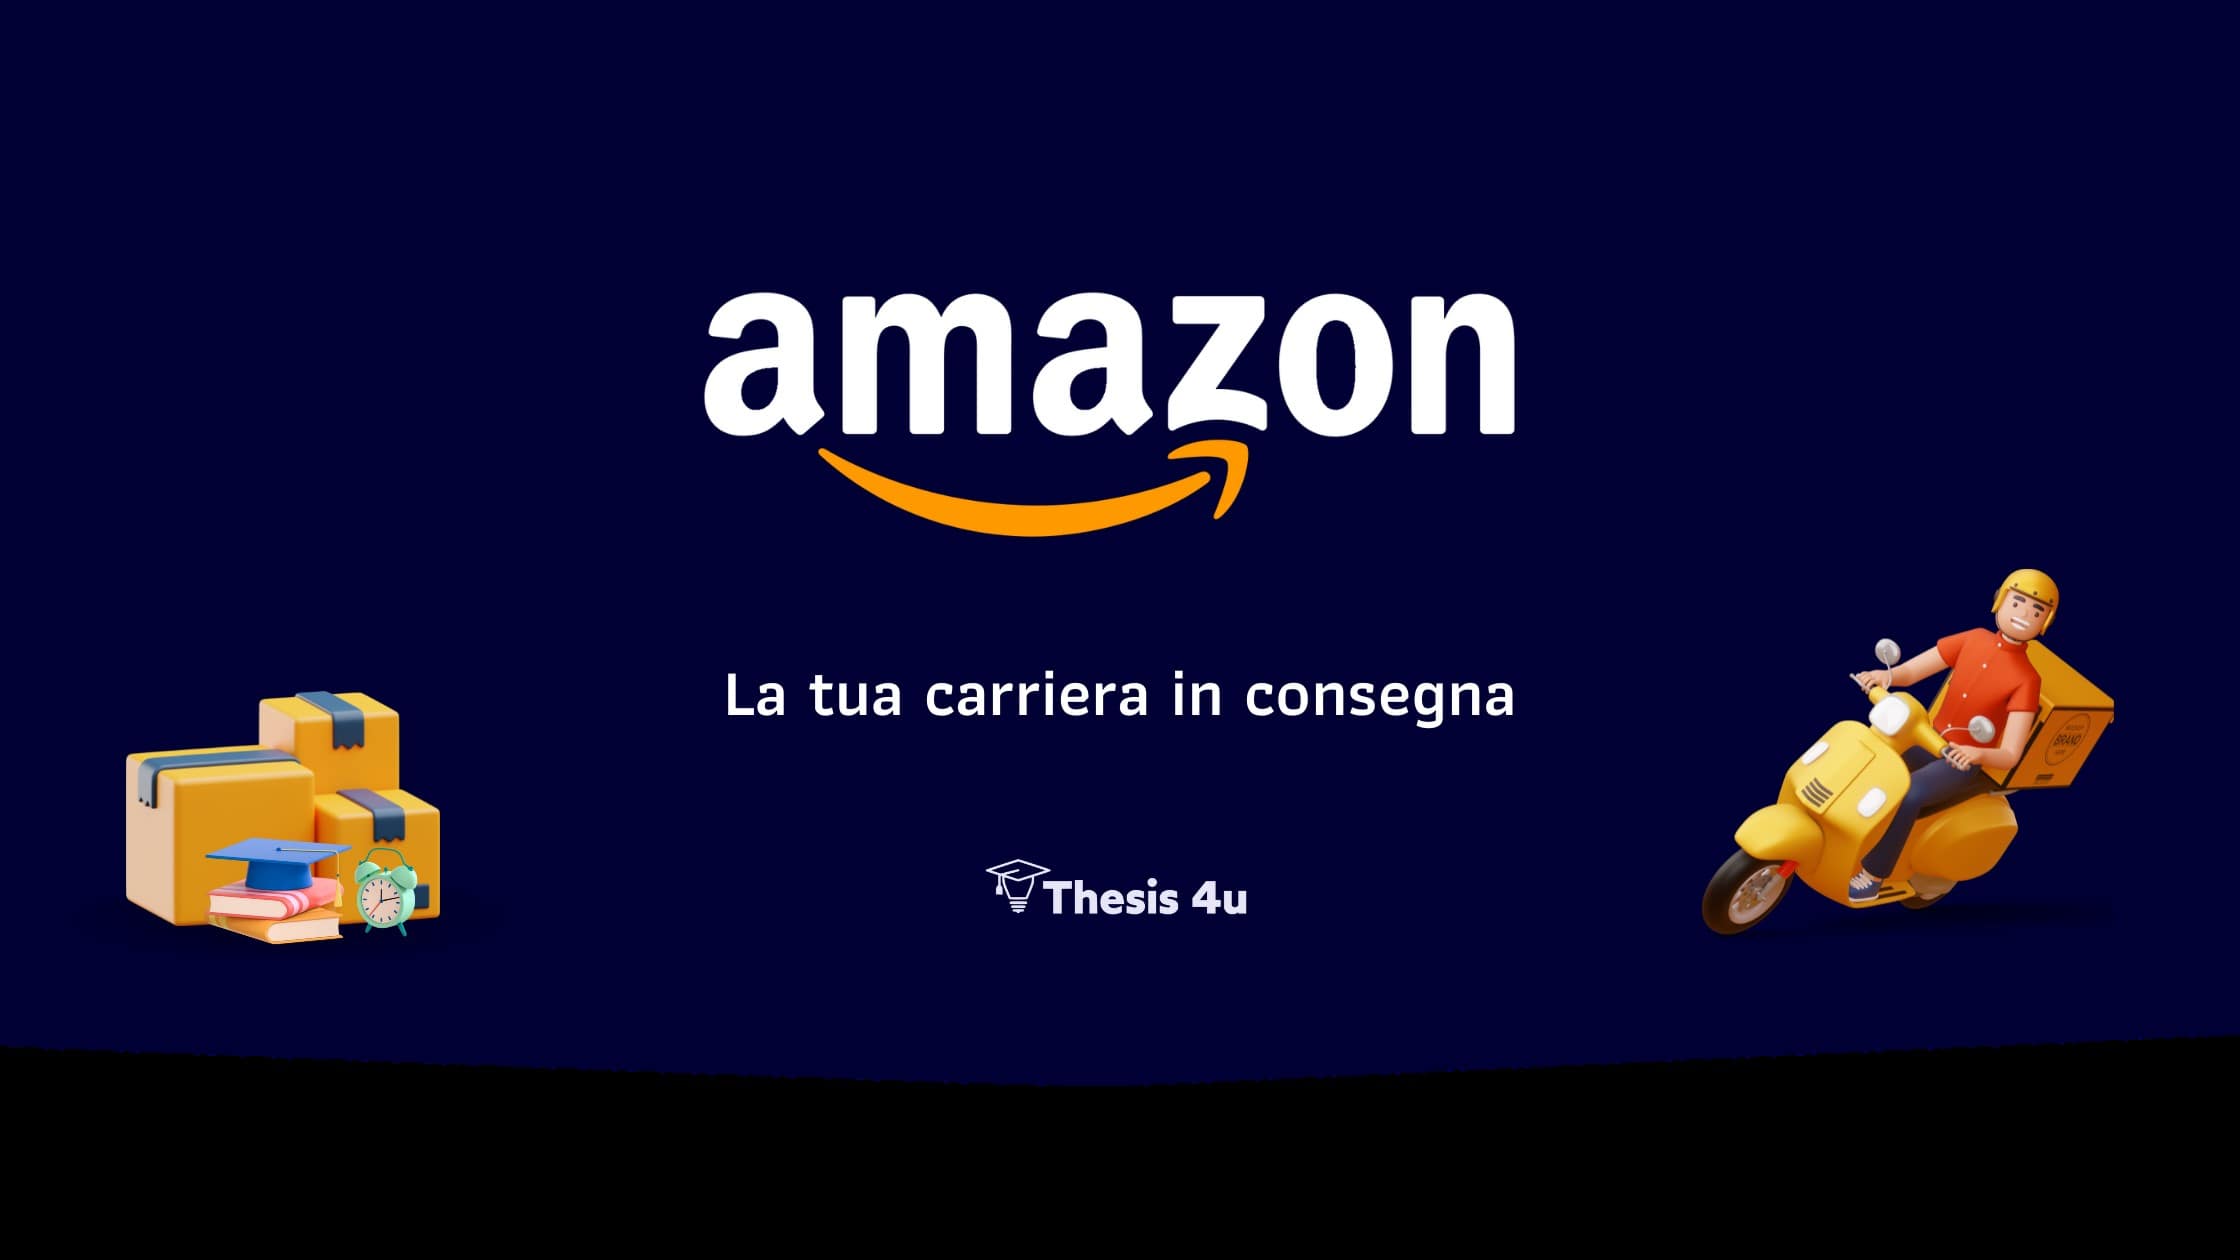 Partecipa alla visita in azienda Amazon!